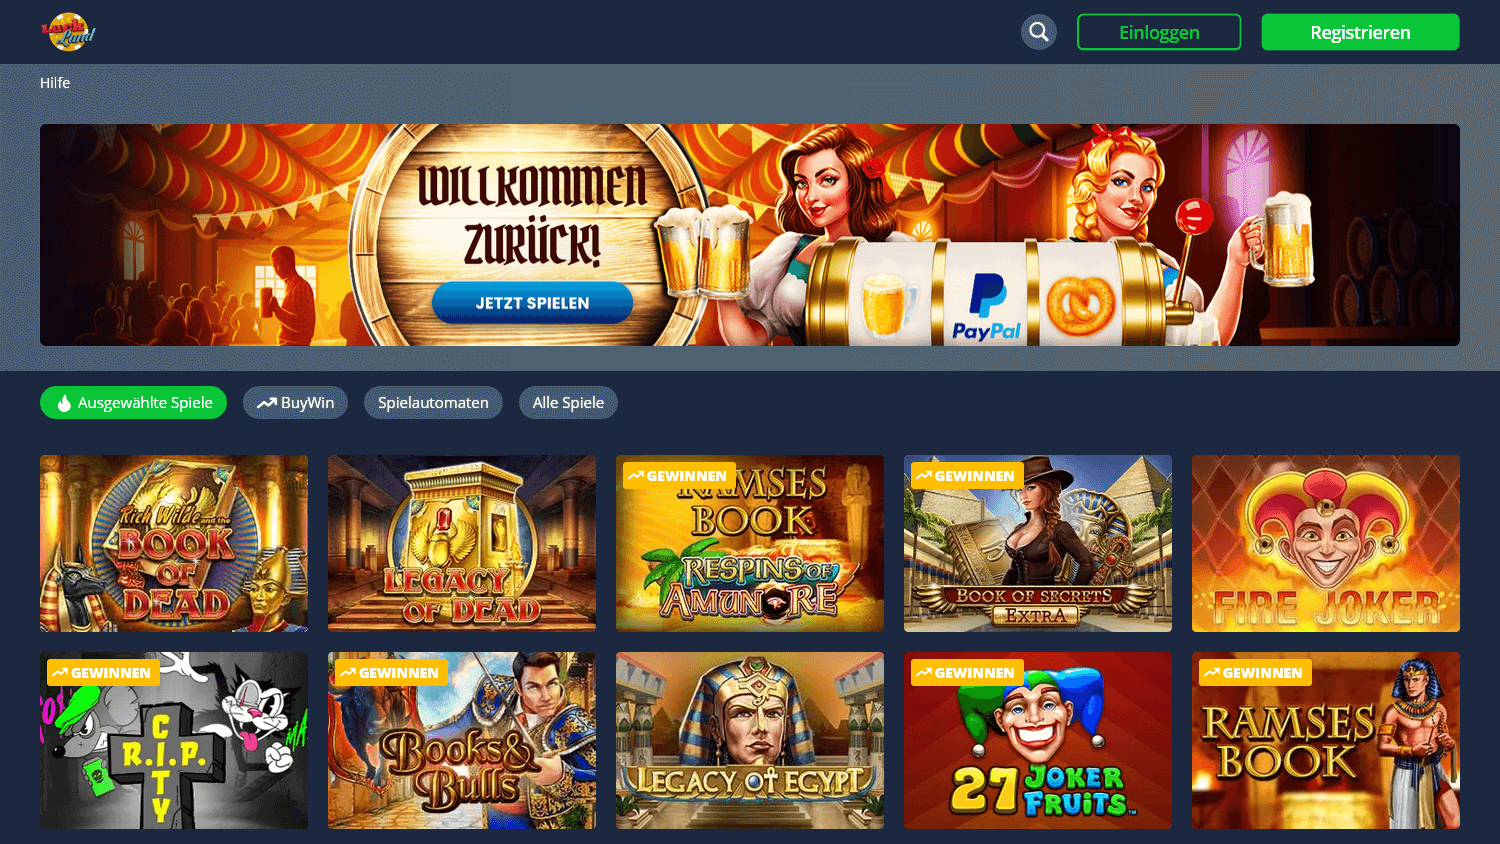 luckland_casino_de_homepage_desktop